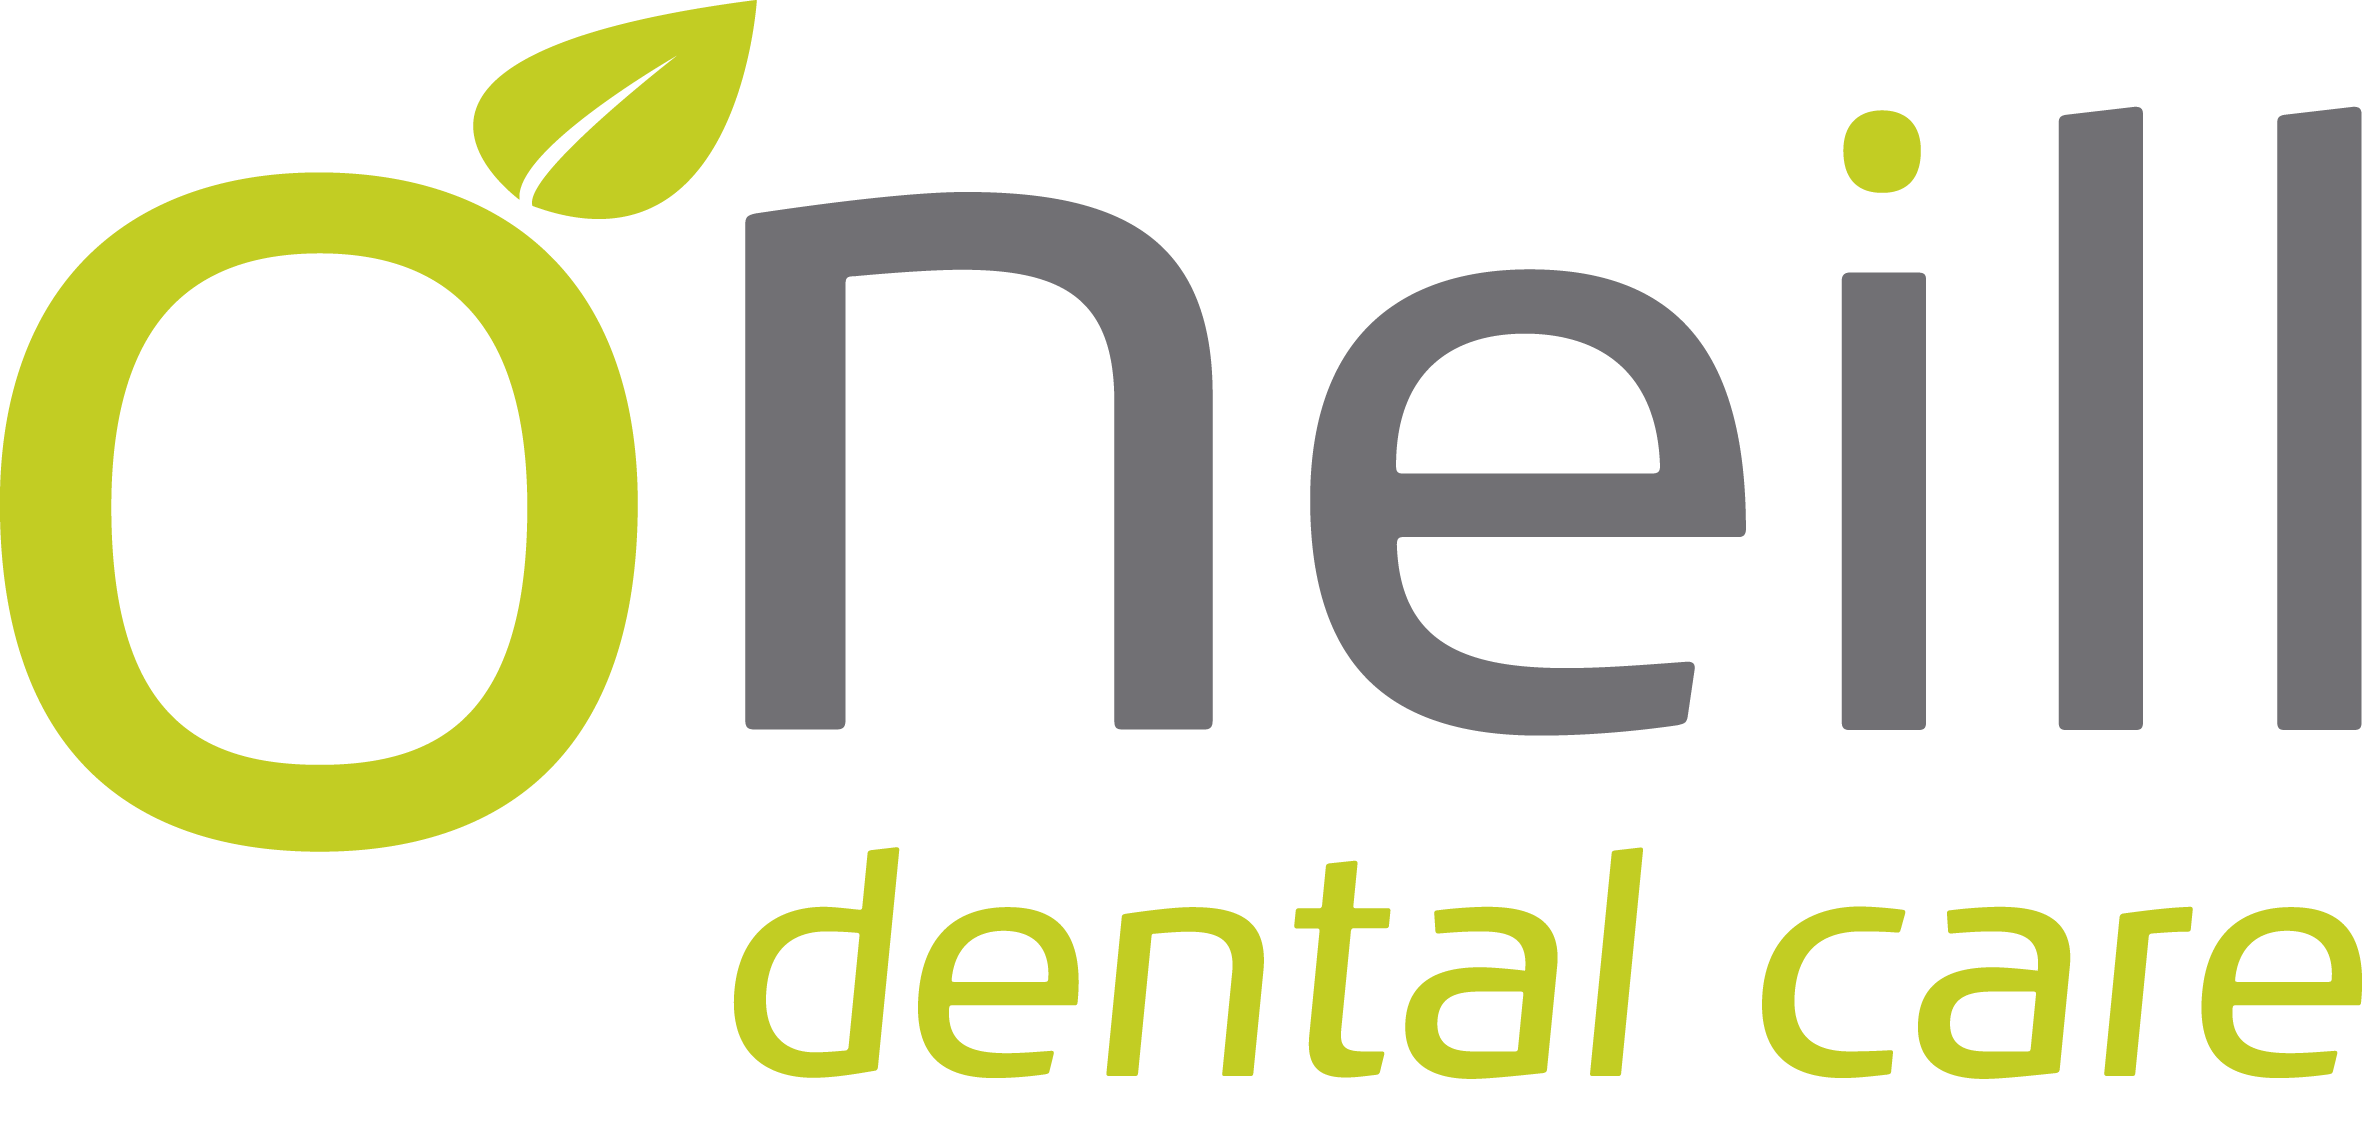 O'Neill Dental Care